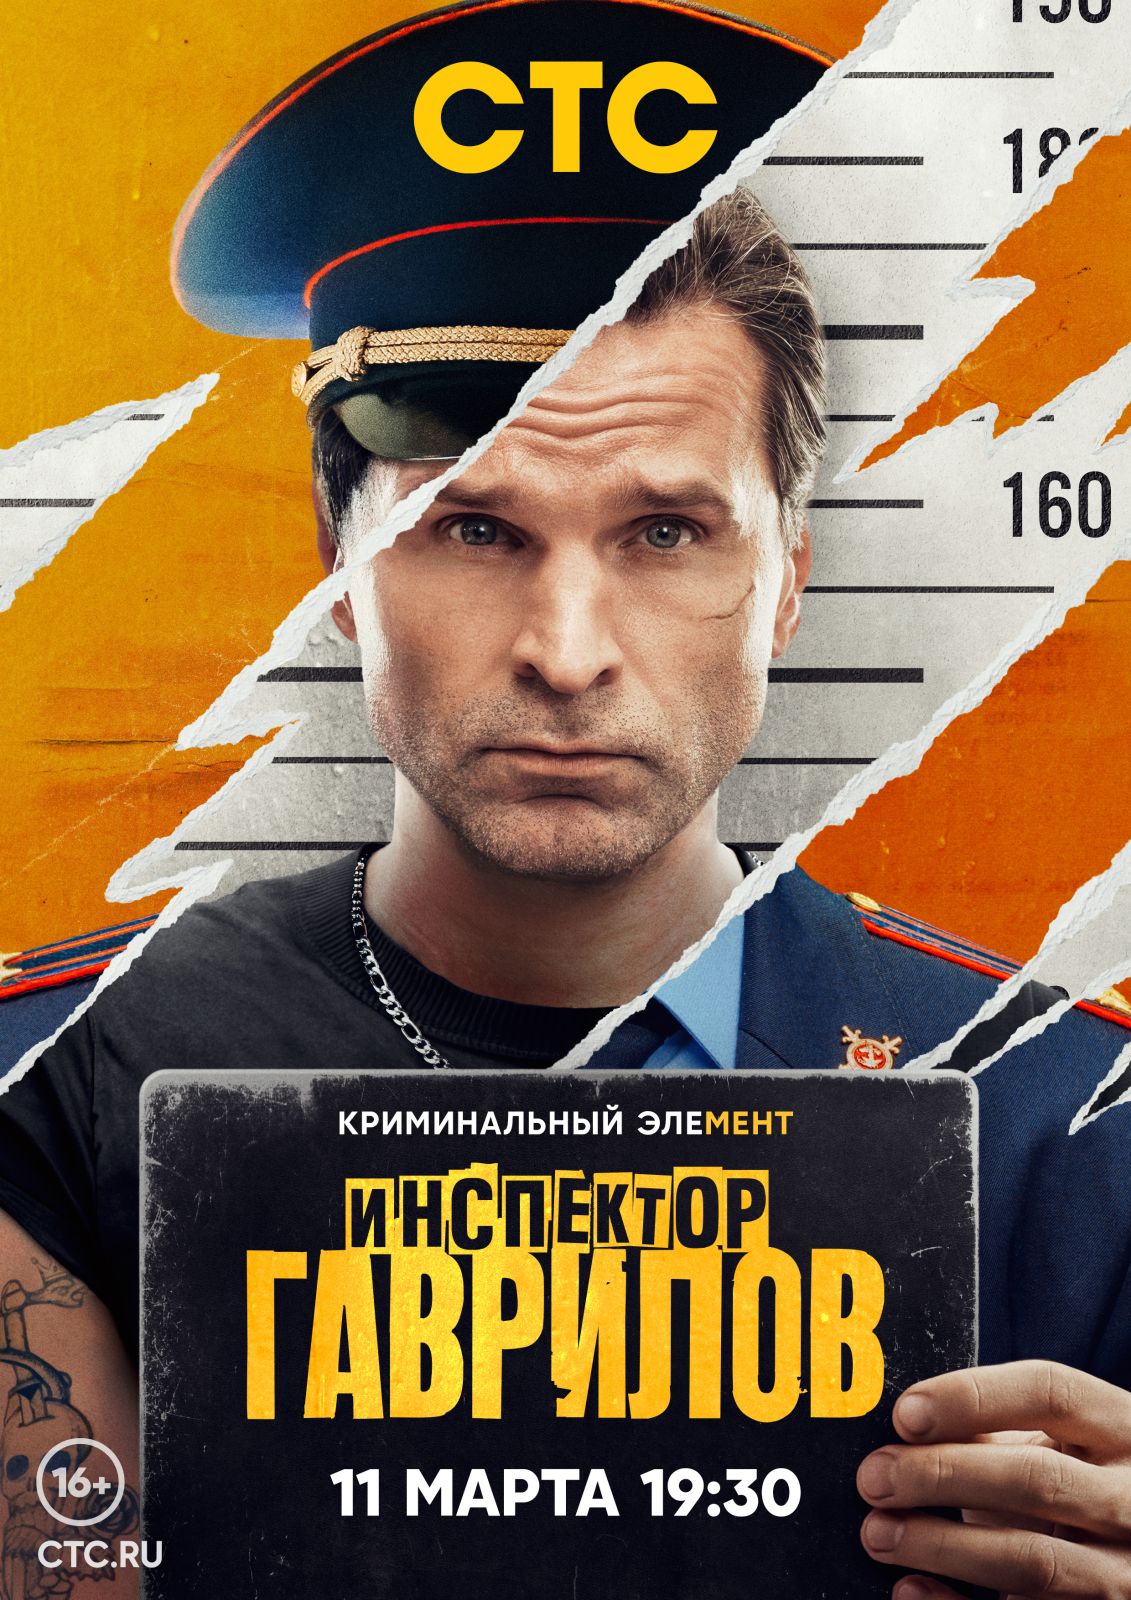 Телепремьера «Инспектора Гаврилова» с Виктором Добронравовым состоится 11 марта